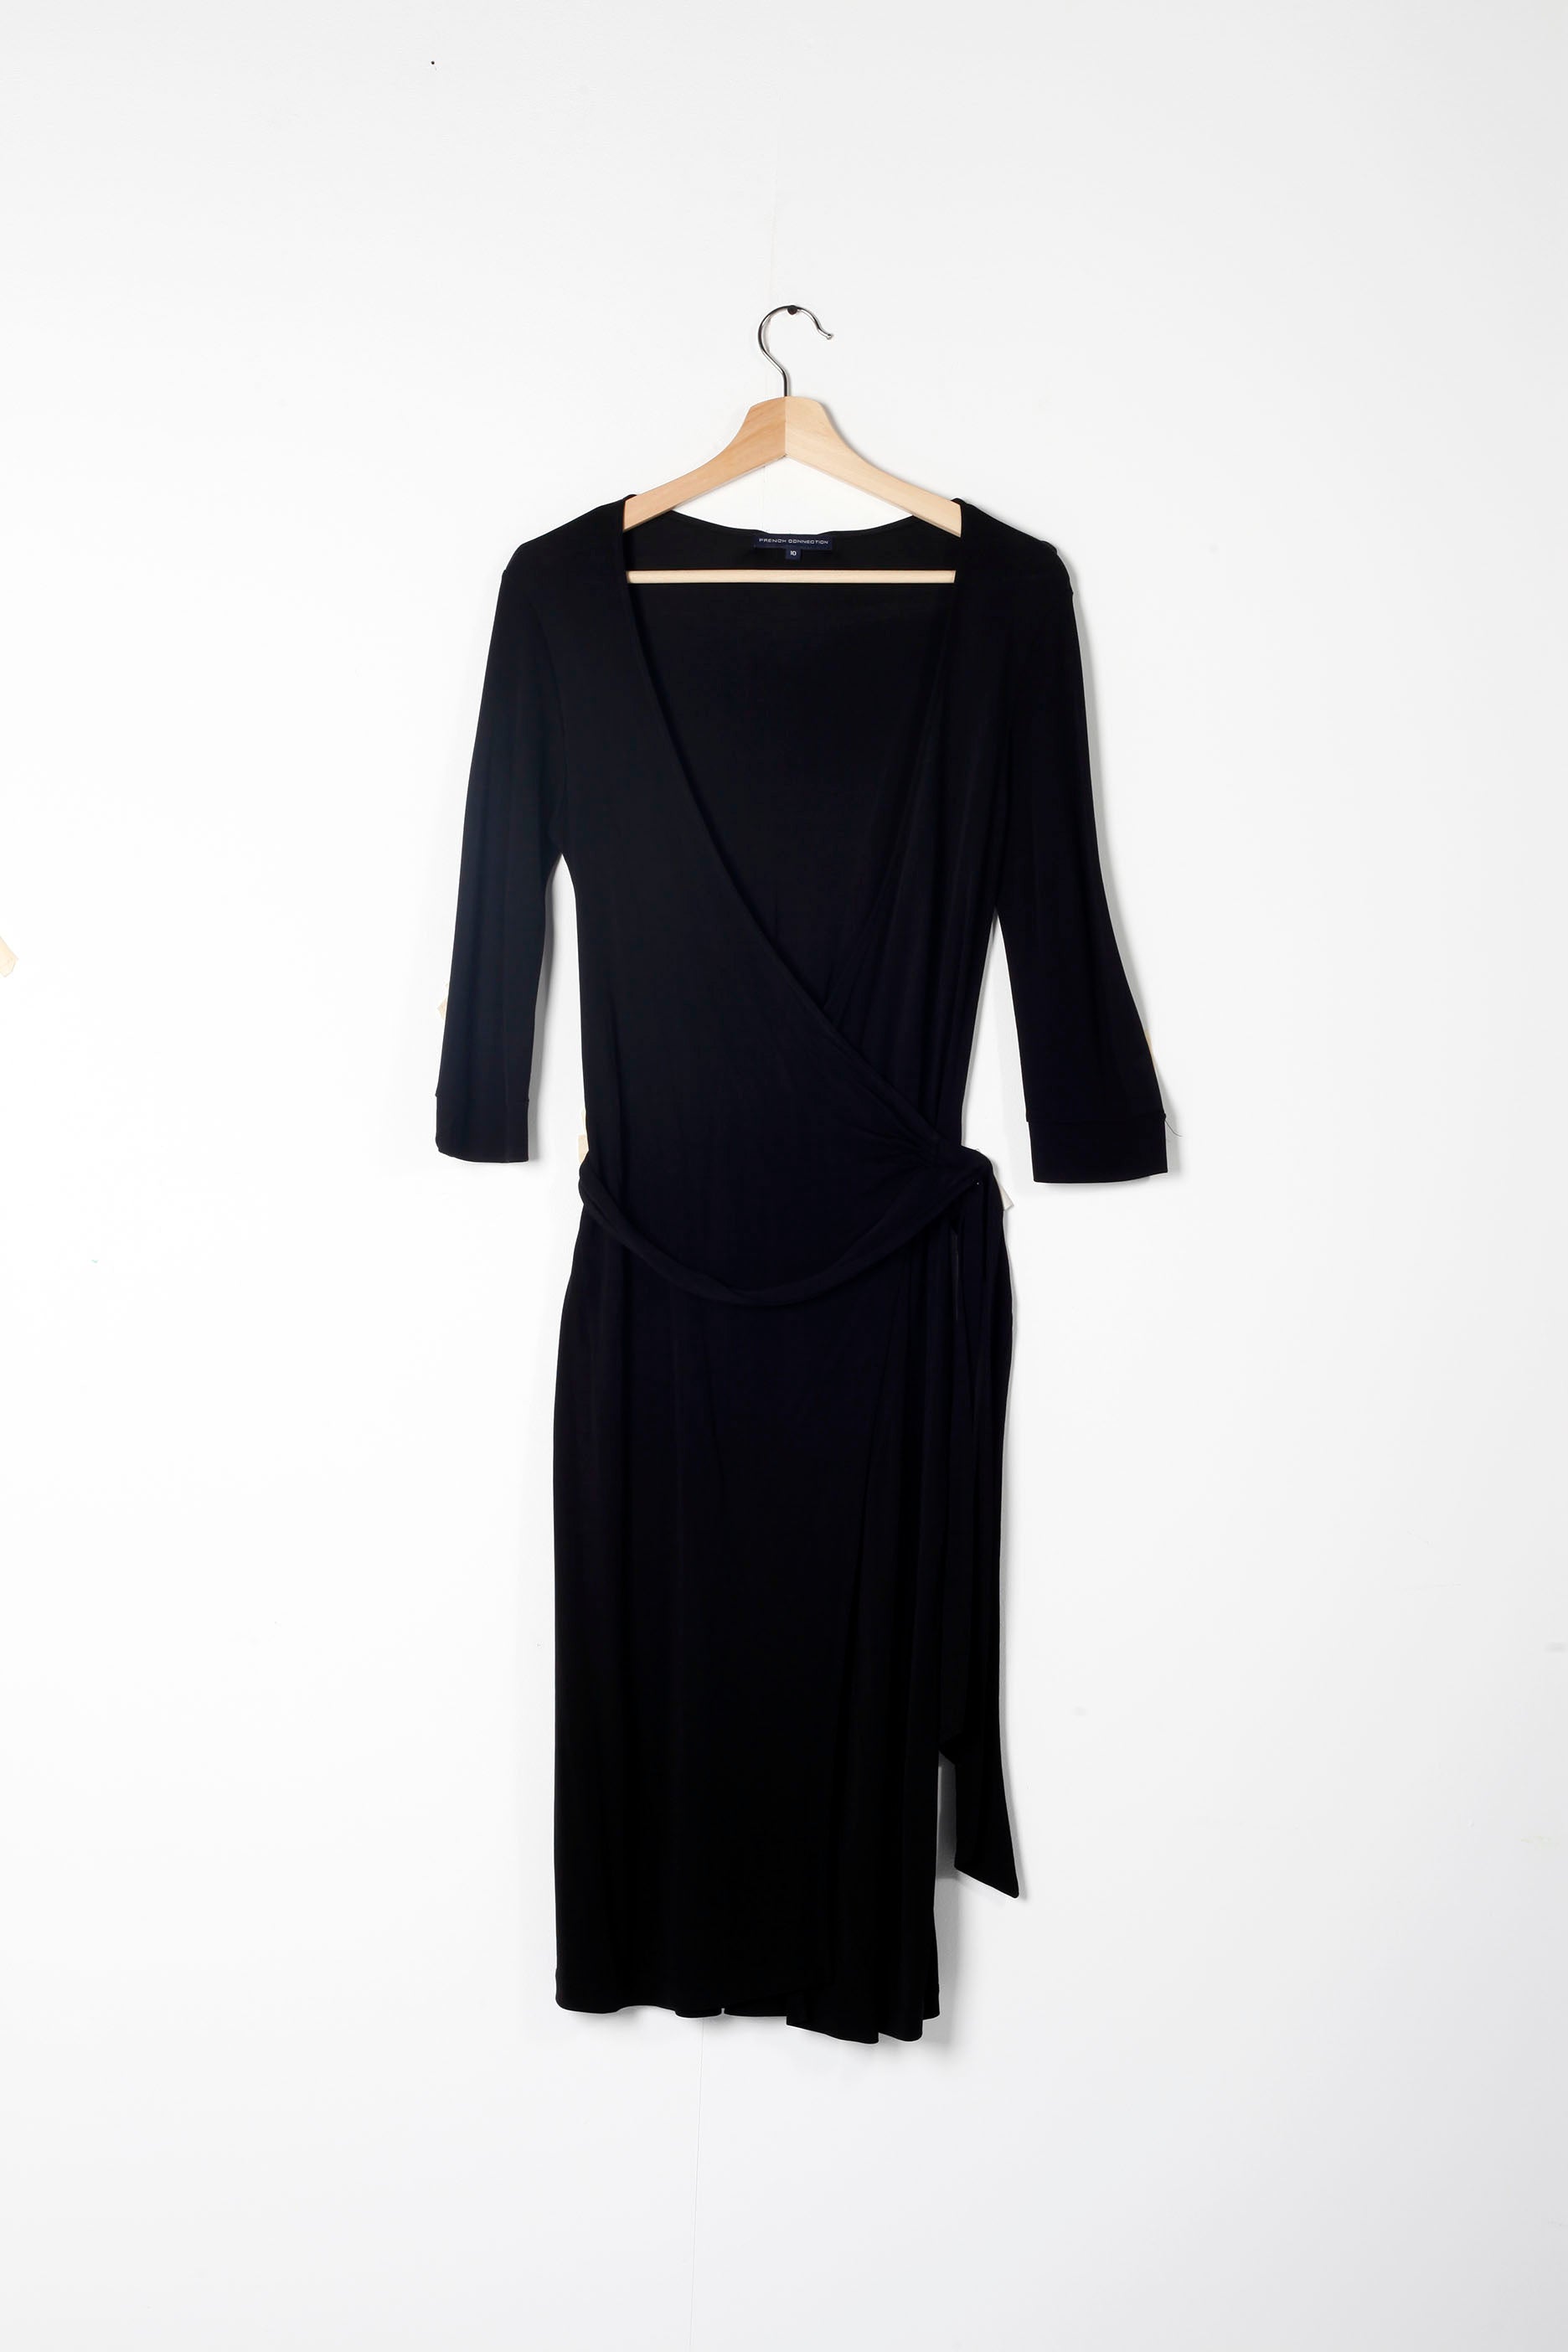 Low Cut Black Wrap Dress (EU36-38)